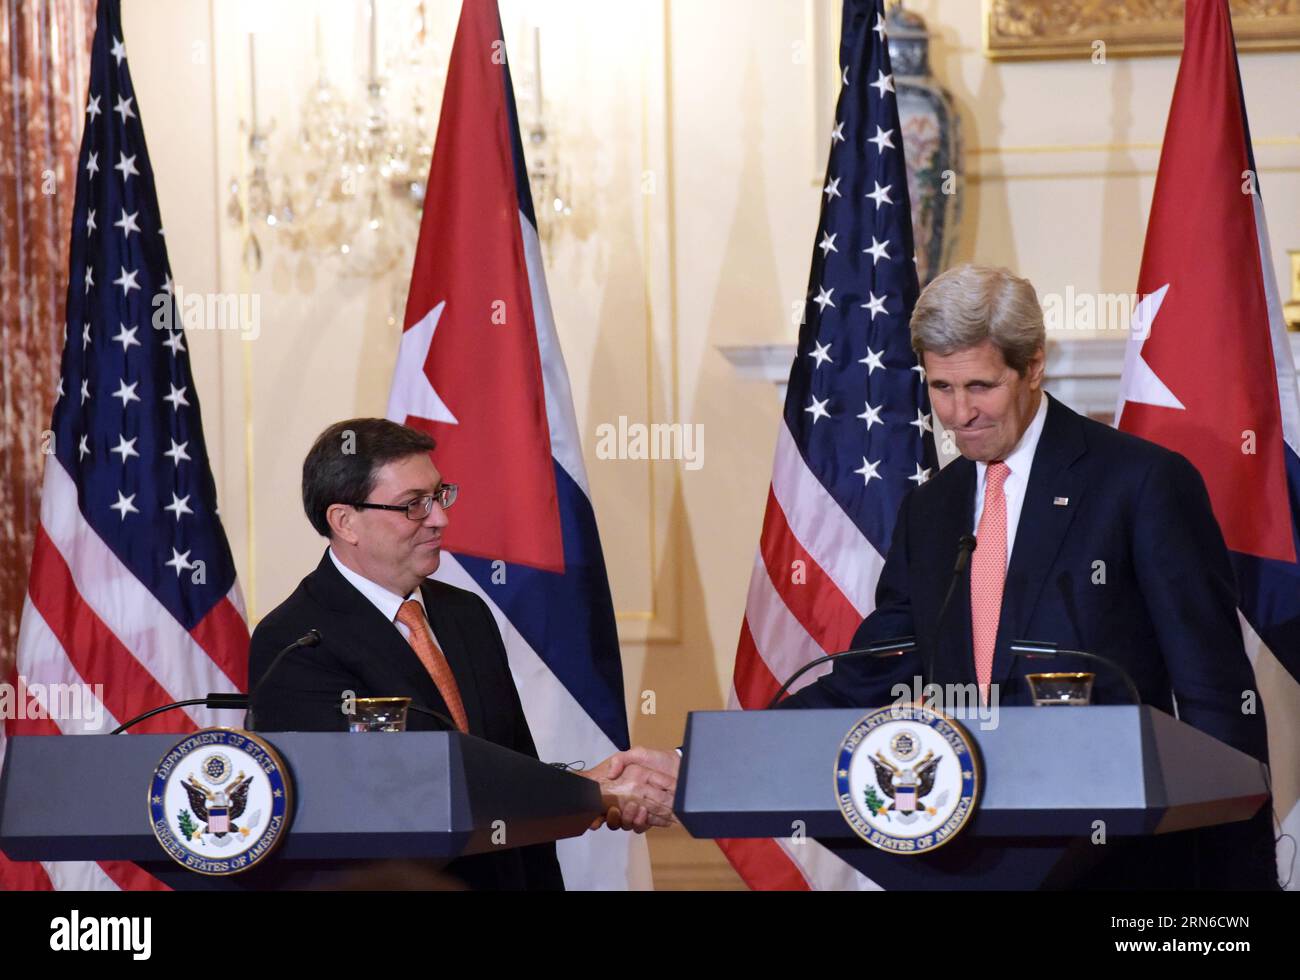 WASHINGTON D.C., 20 de julio de 2015 -- El secretario de Estado de Estados Unidos, John Kerry (R), y el canciller cubano Bruno Rodríguez, se dan la mano durante una conferencia de prensa conjunta en el Departamento de Estado en Washington, D.C., Estados Unidos, el 20 de julio de 2015. Estados Unidos y Cuba restablecieron las relaciones diplomáticas el lunes. ) YinxBogu PUBLICATIONxNOTxINxCHN WASHINGTON D C JULIO 20 2015 El Secretario de Estado de los Estados Unidos John Kerry r y los Cancilleres cubanos Bruno Rodríguez se dan la mano durante una conferencia de prensa conjunta EN el Departamento de Estado en Washington D C Estados Unidos Foto de stock